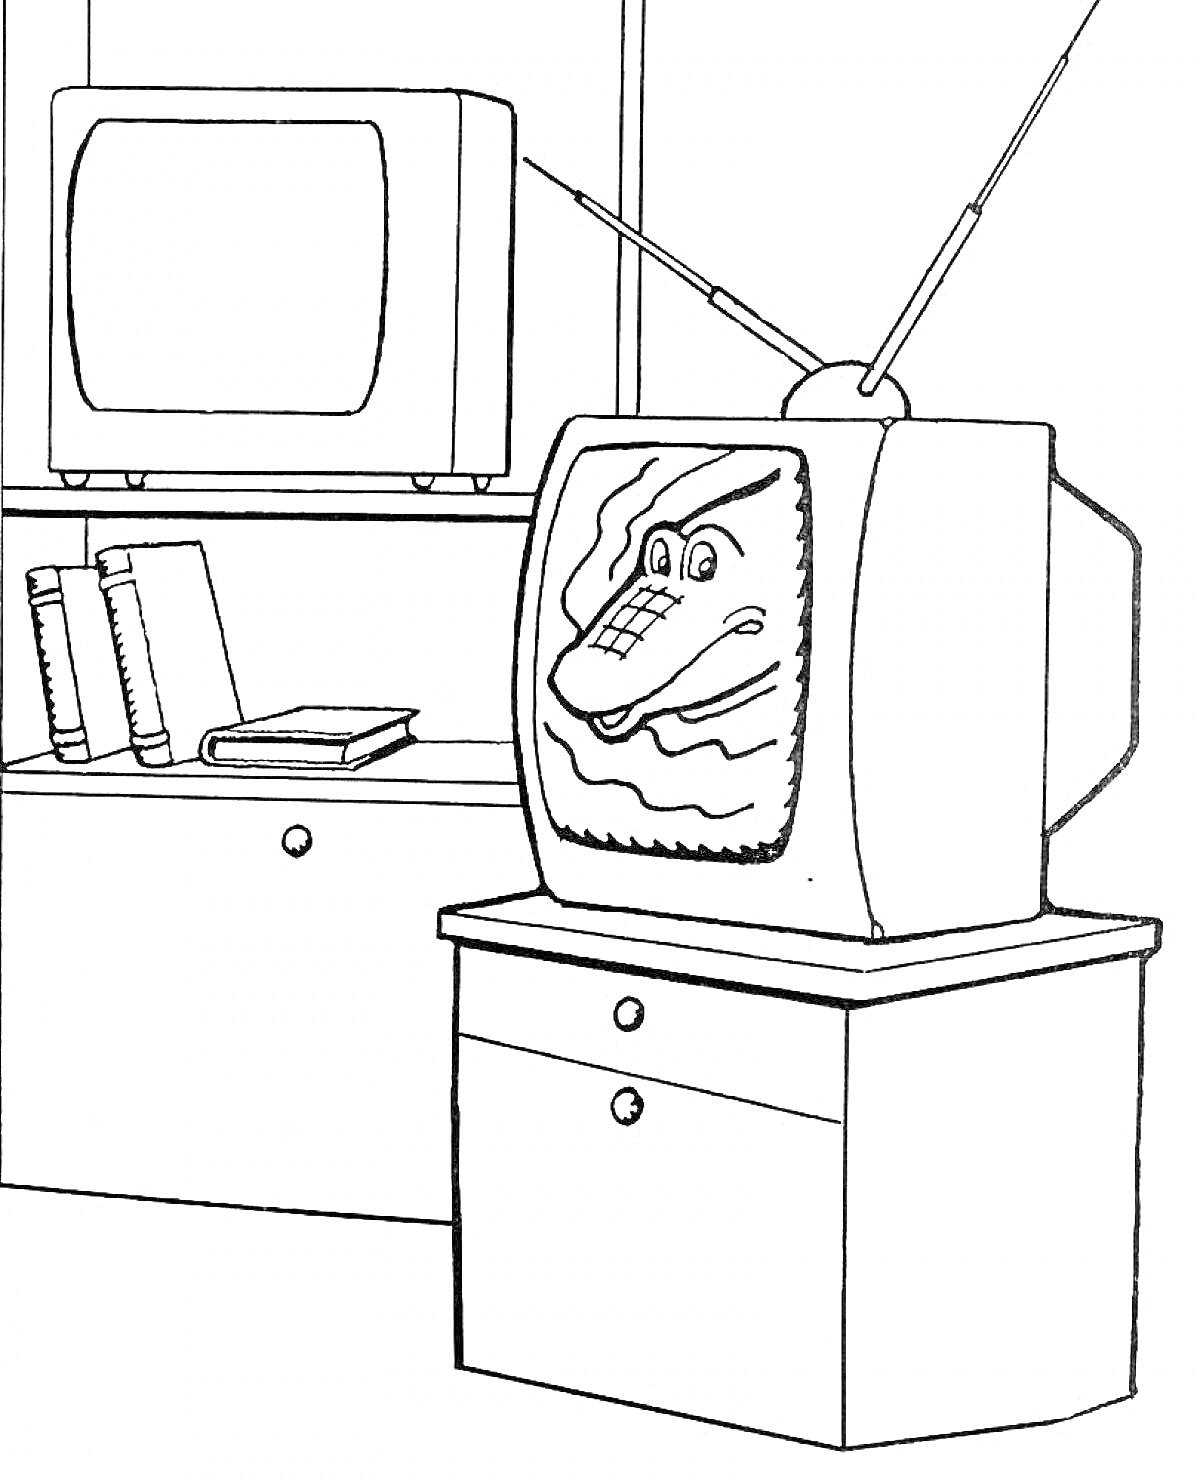 Раскраска Телевизоры на тумбочках с антеннами, книги на полке, крокодил на экране